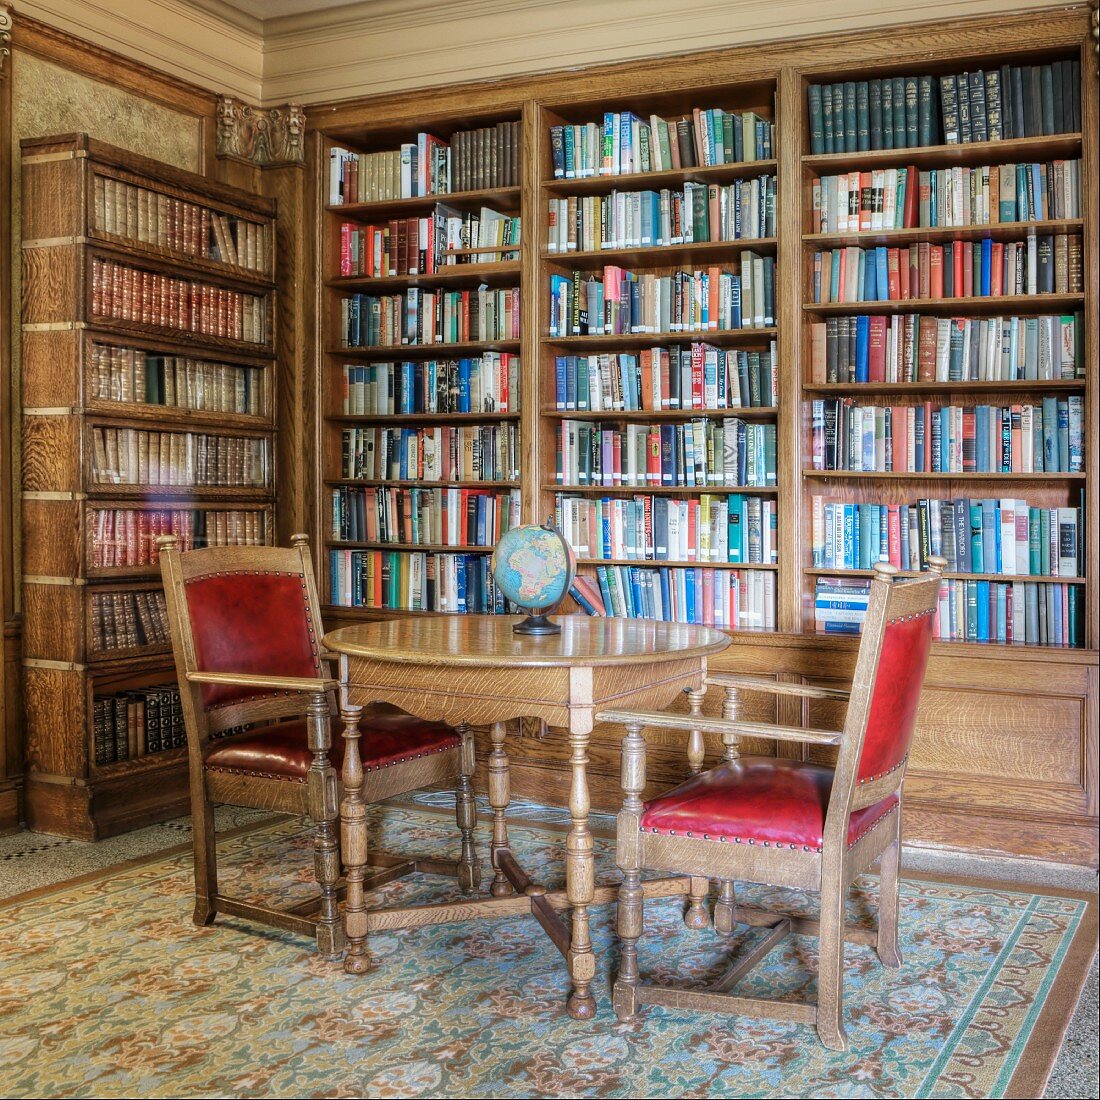 Historische Bibliothek mit antikem Tisch und Stühlen vor einer Bücherwand